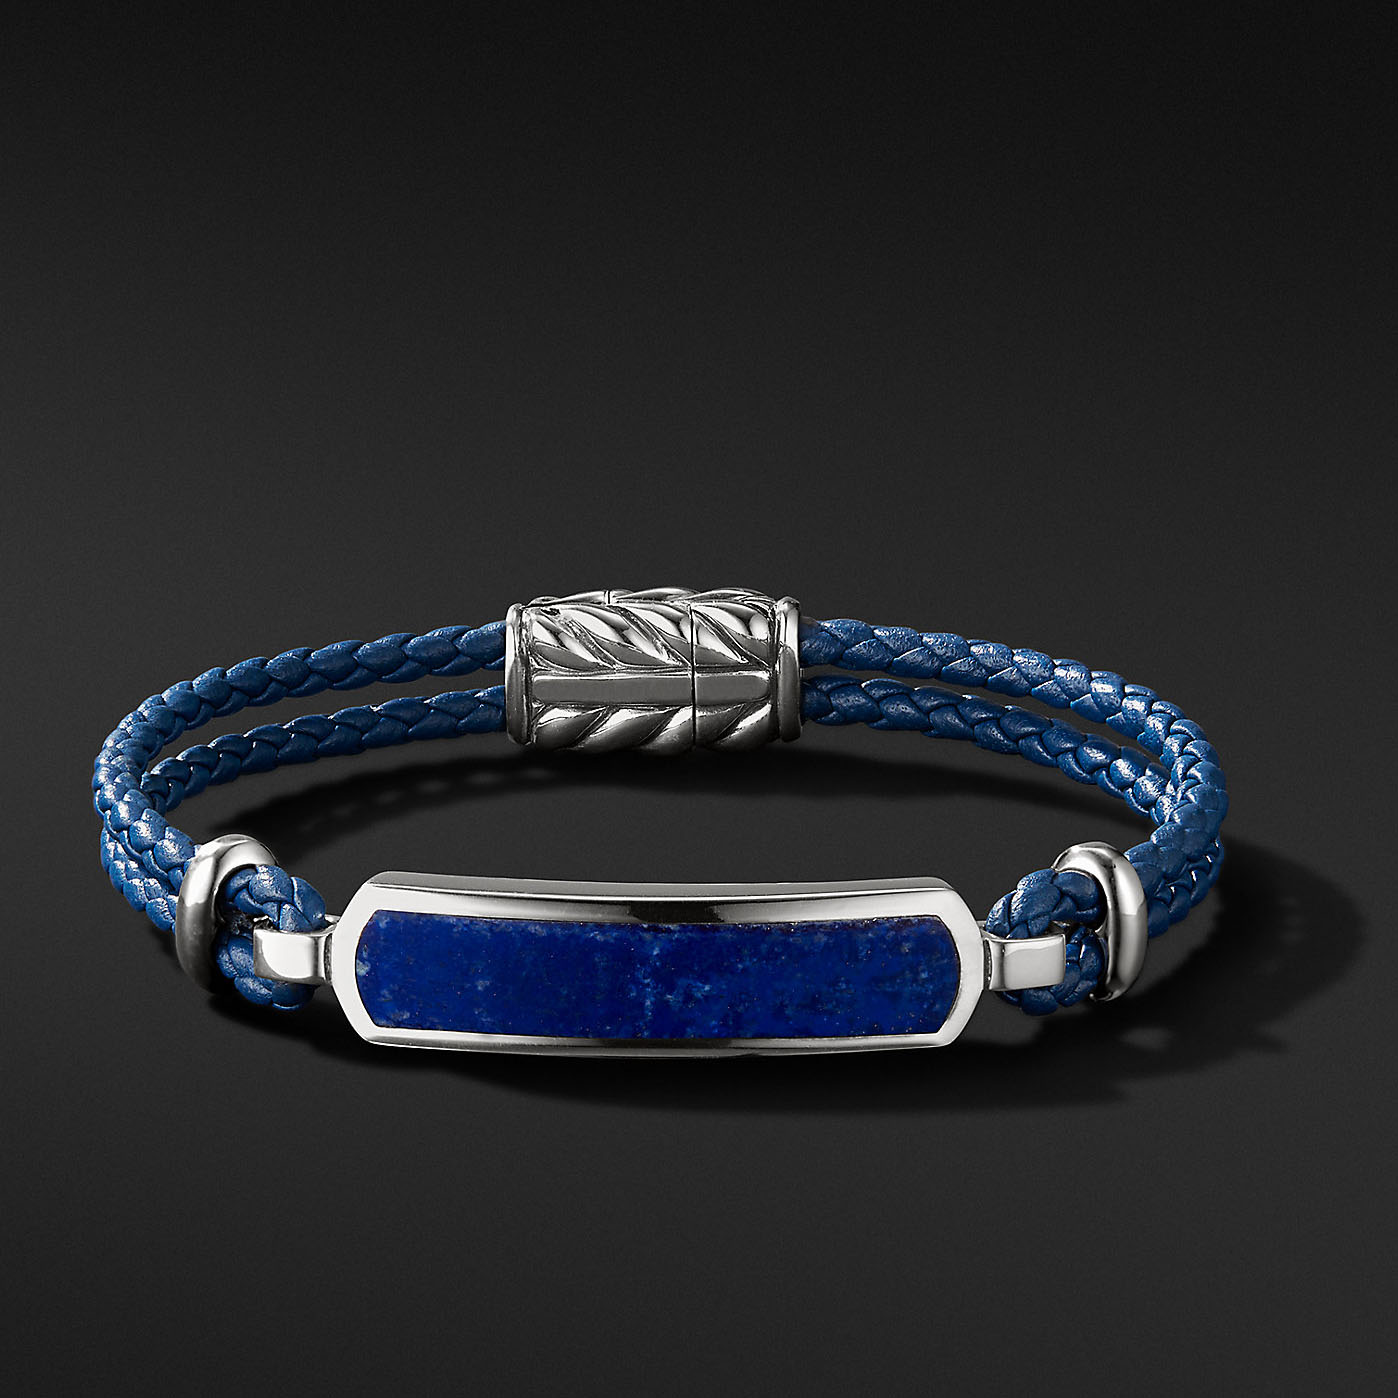 Großhandel OEM-Herren-Sterling-OEM/ODM-Schmuck-Silberarmband mit blauem Lederdesign, Ihr Schmucklieferant